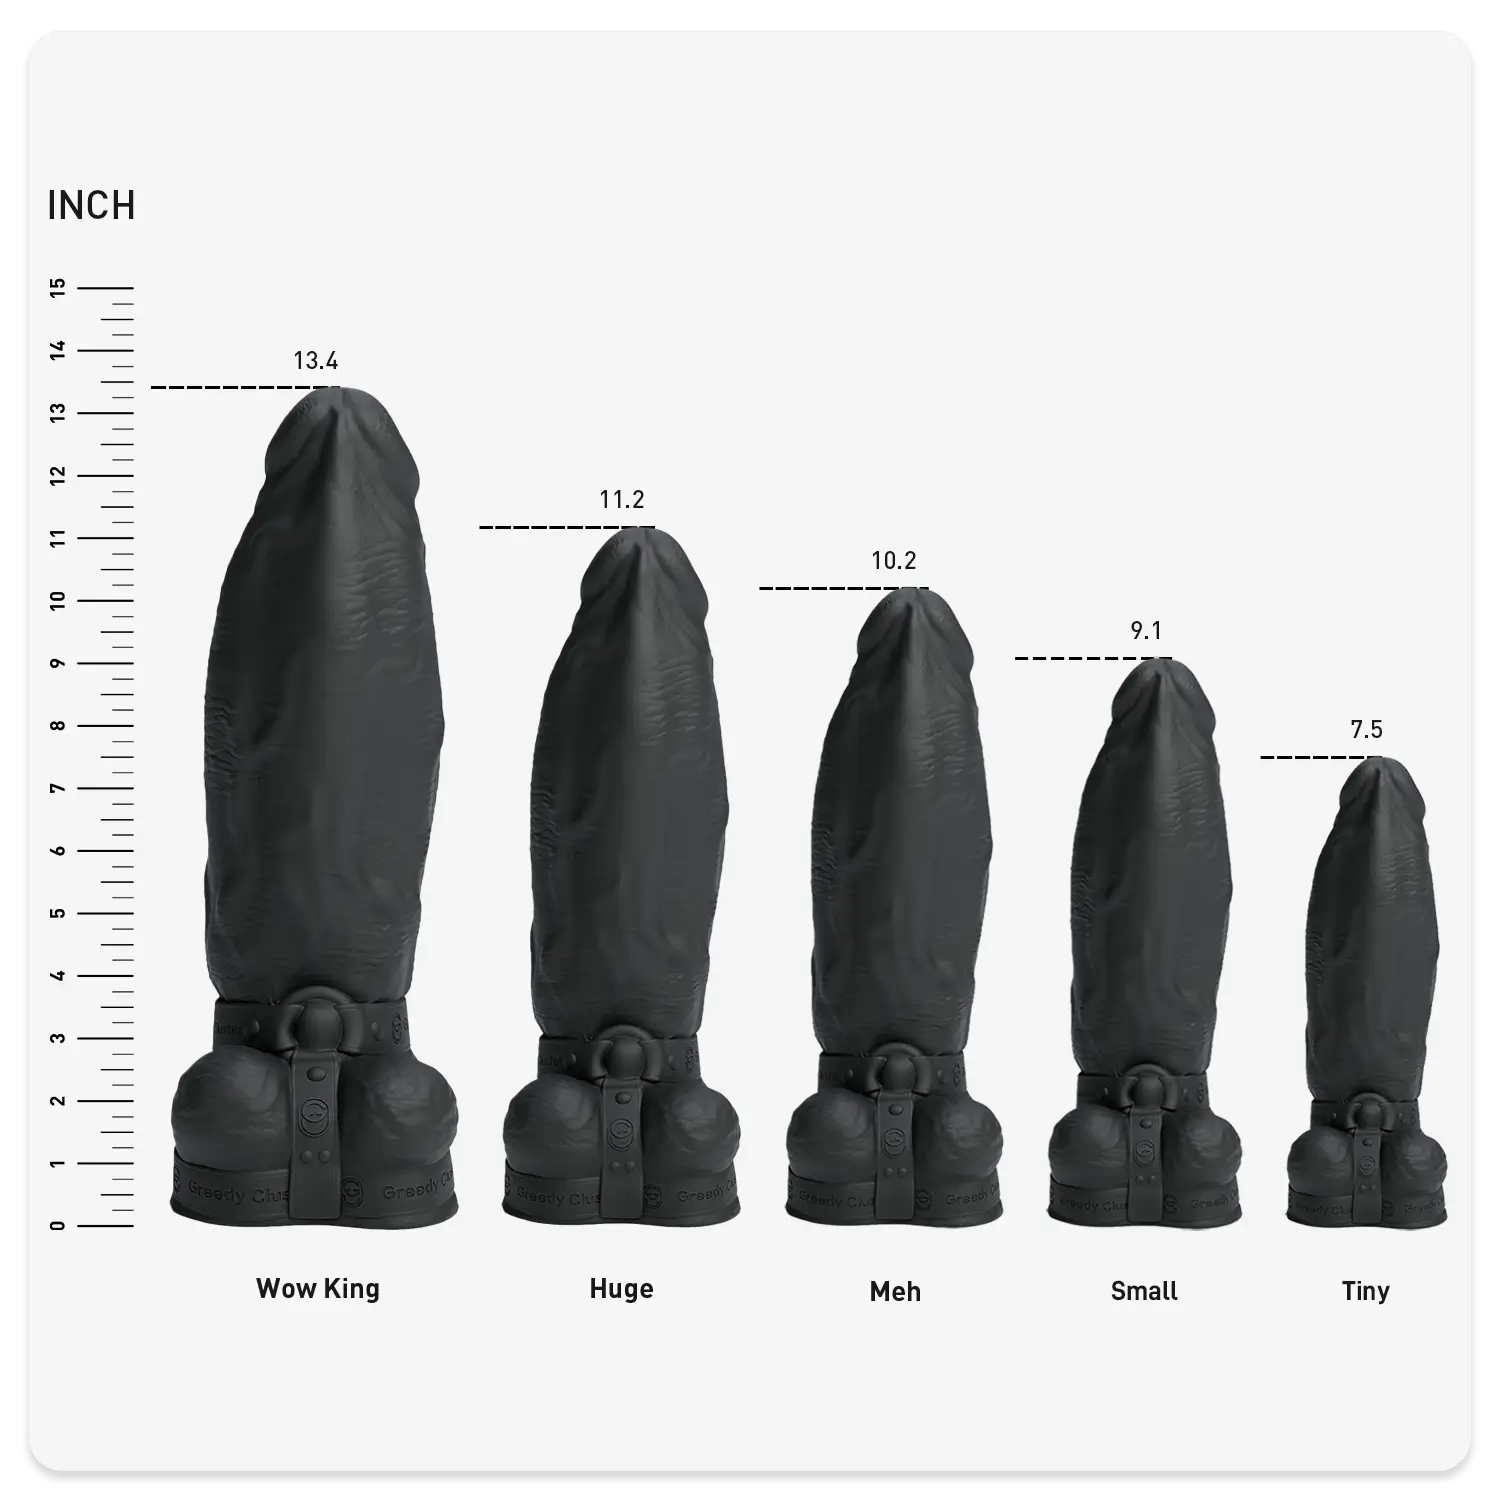 bdsm sex toy,harness dildo,bondage dildo-black color BBC sizeschart